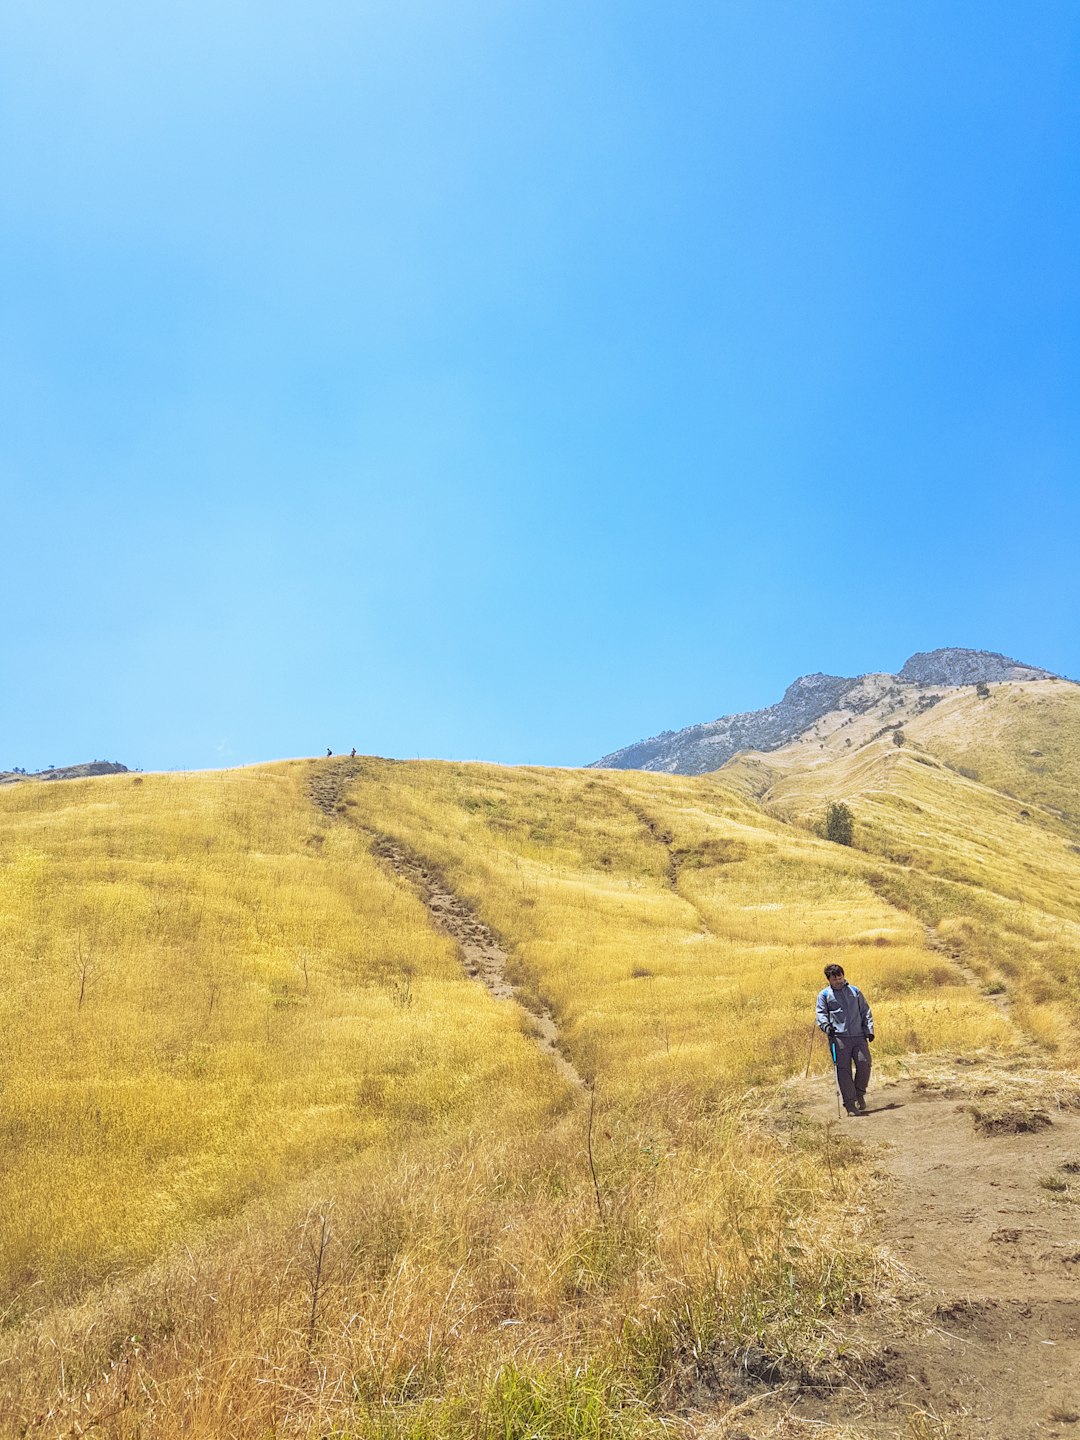 Hill photo spot Mount Sumbing Dieng